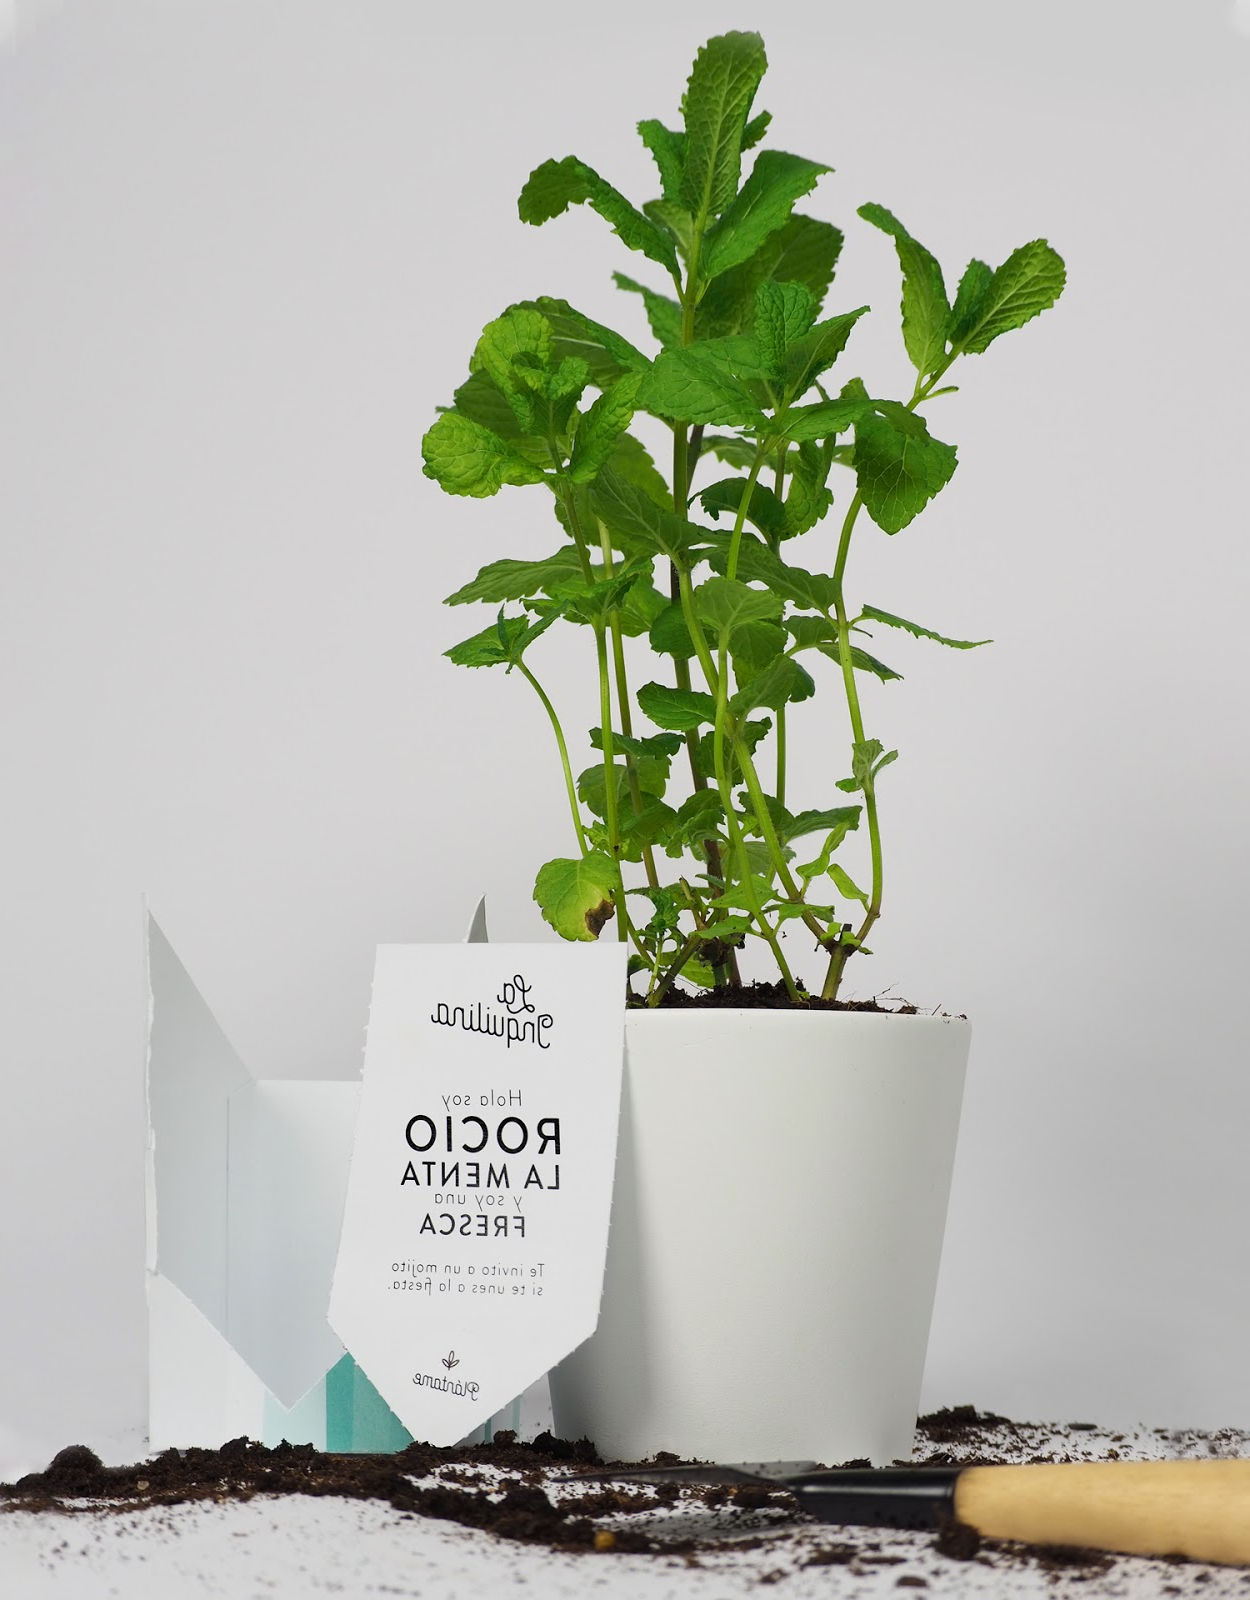 植物盆栽的包装设计让消费者和产品互动起来(图10)